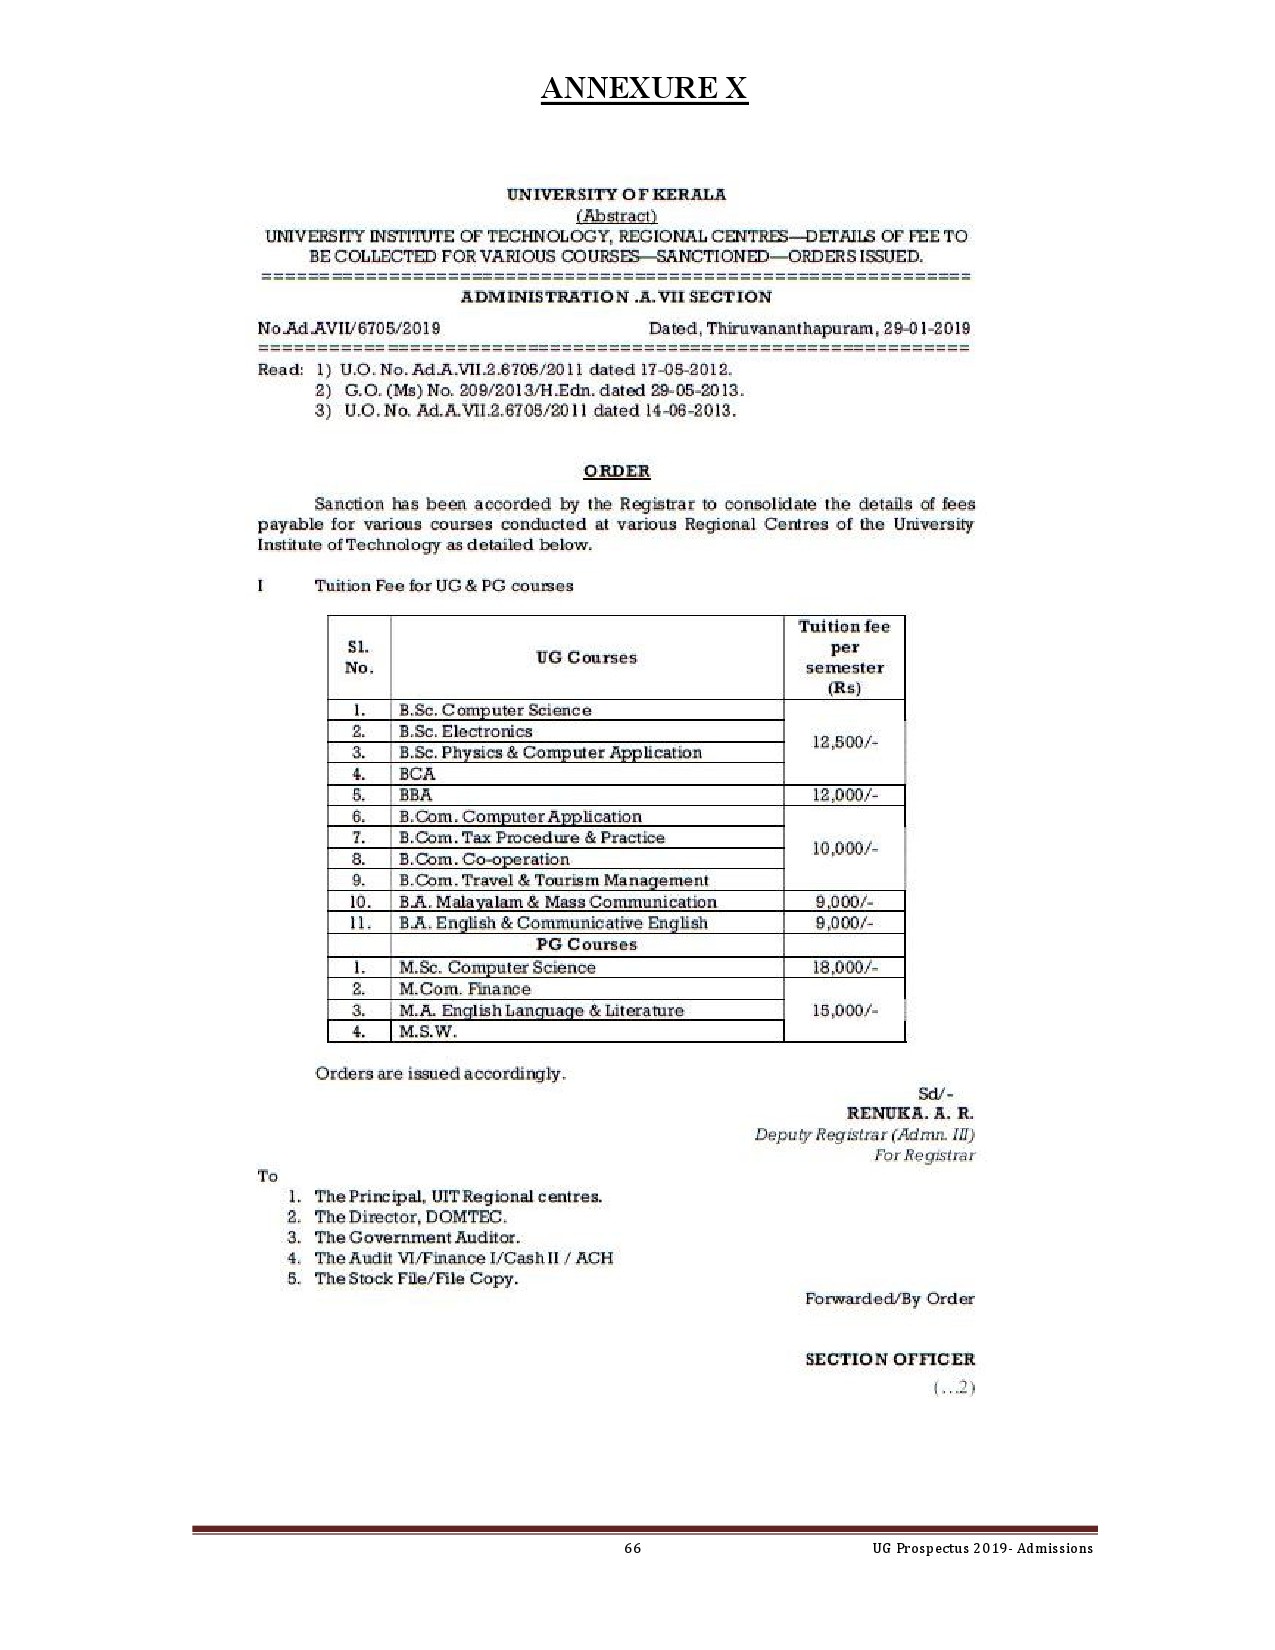 Kerala University UG Admission Prospectus 2019 - Notification Image 66